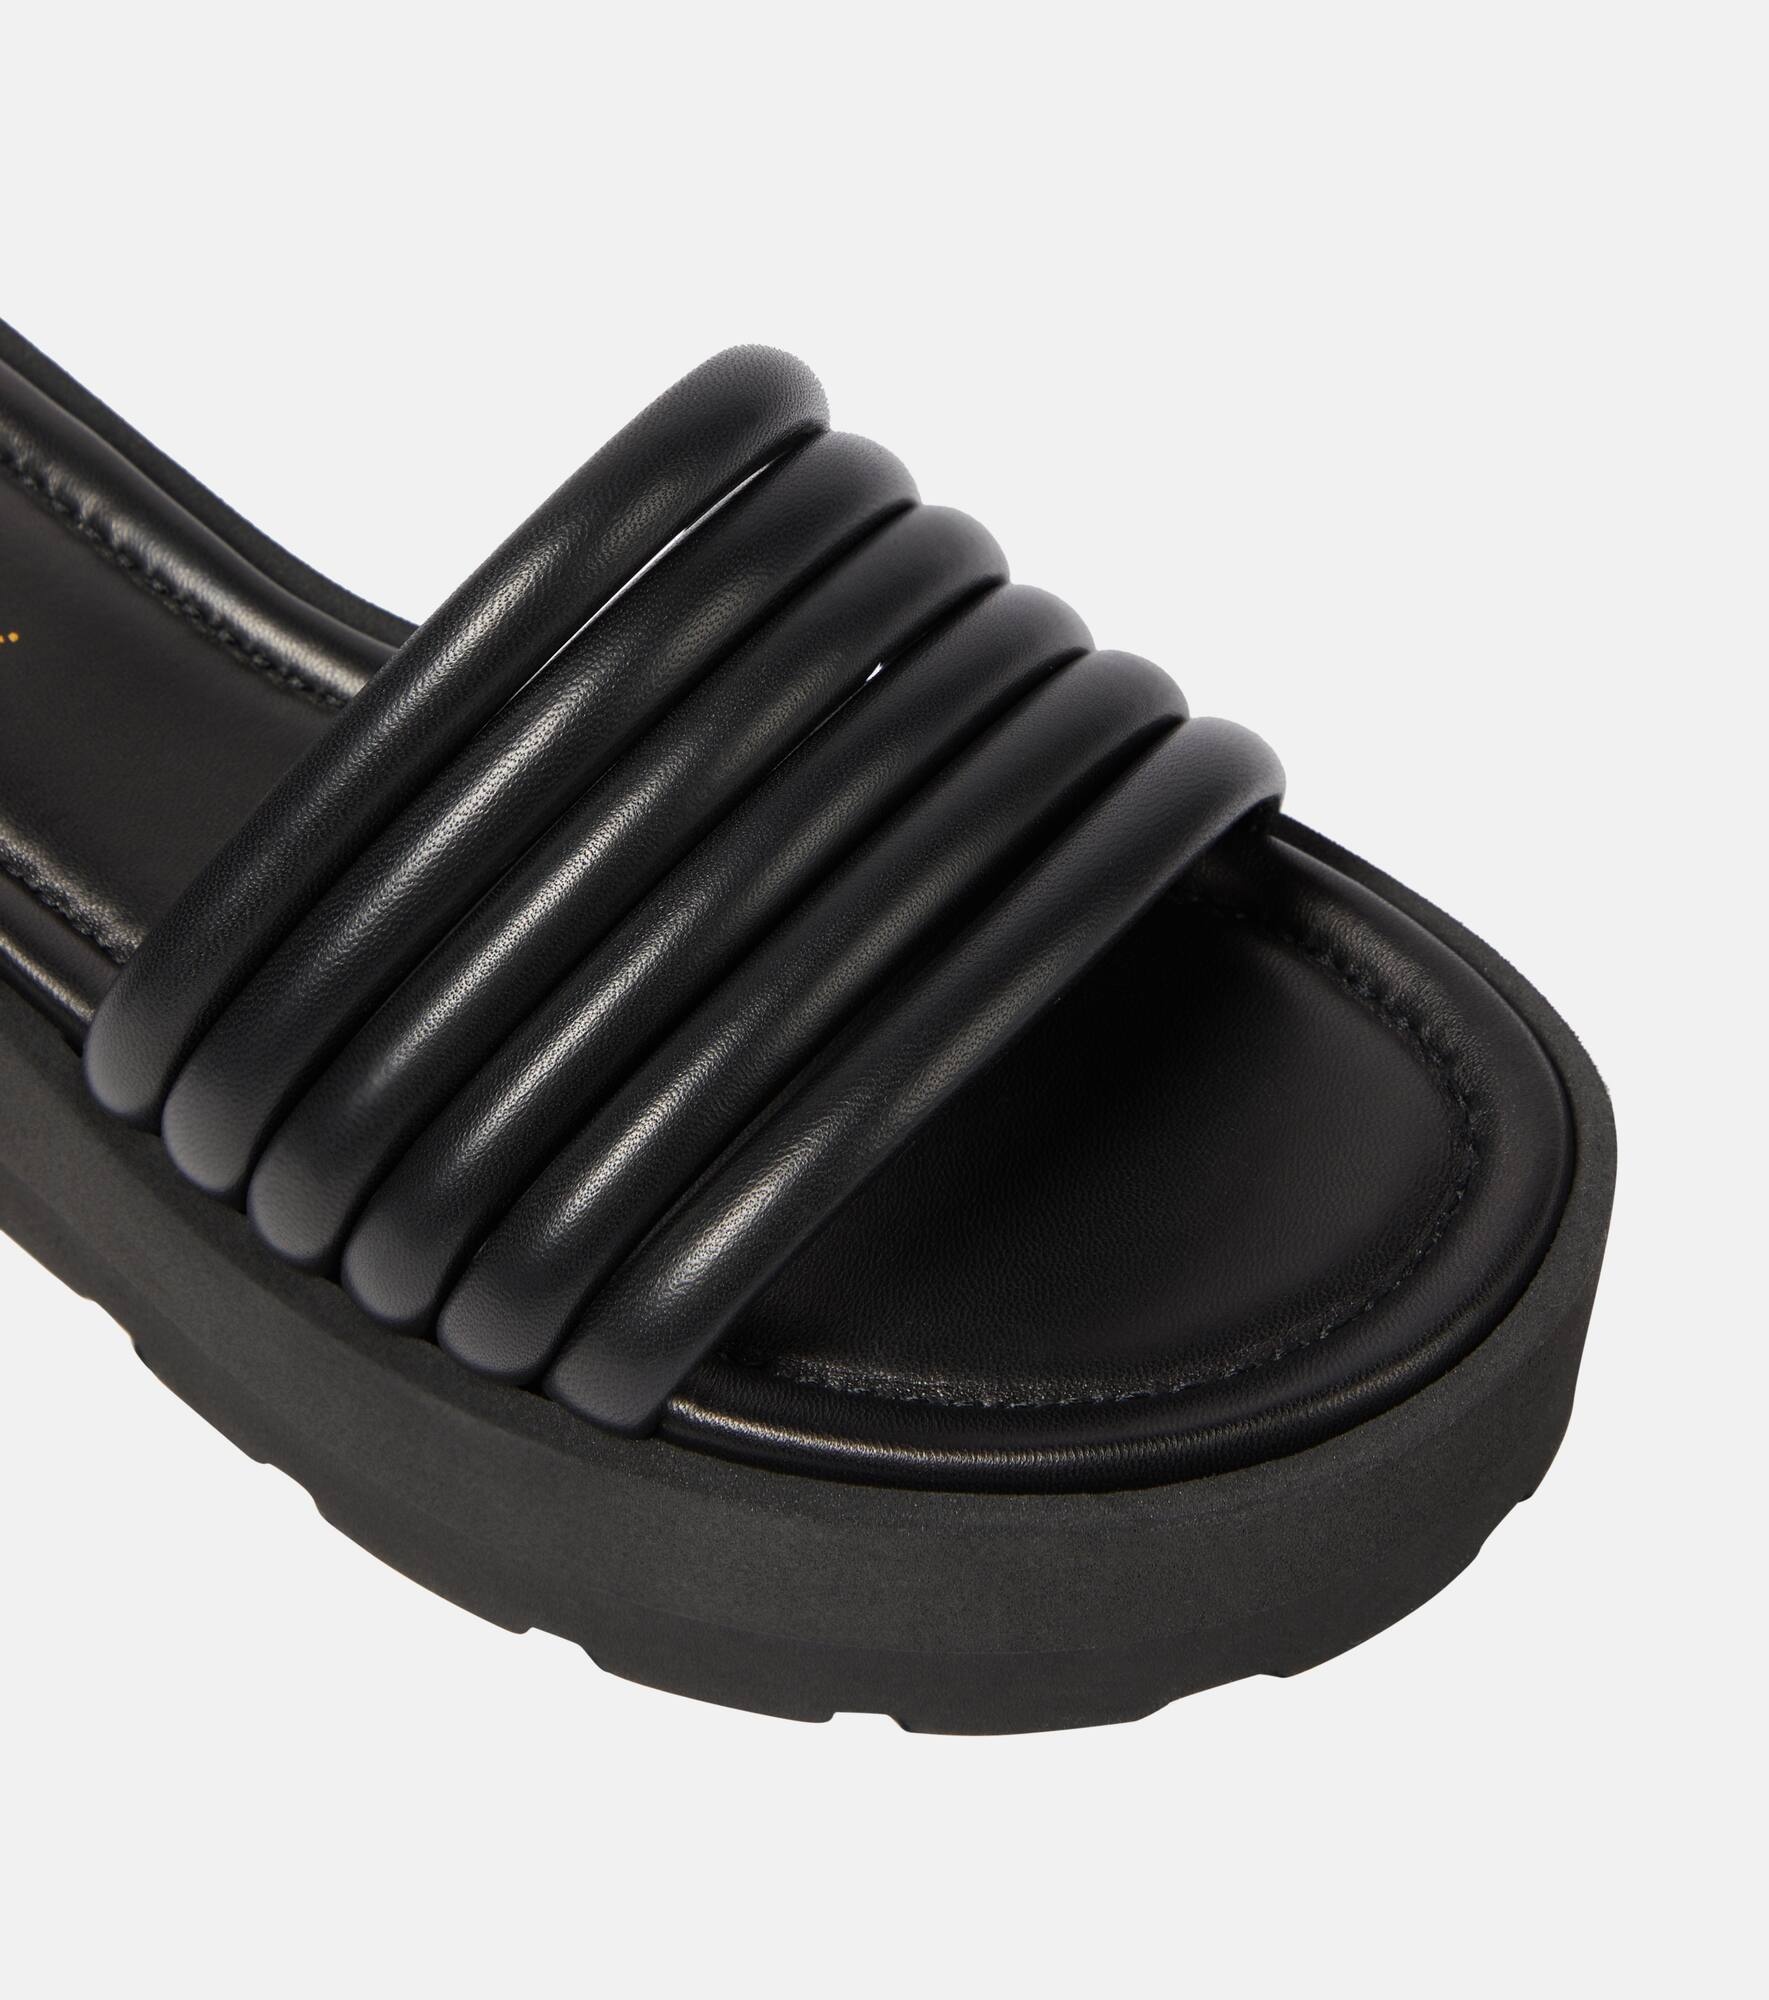 Leather platform sandals - 6